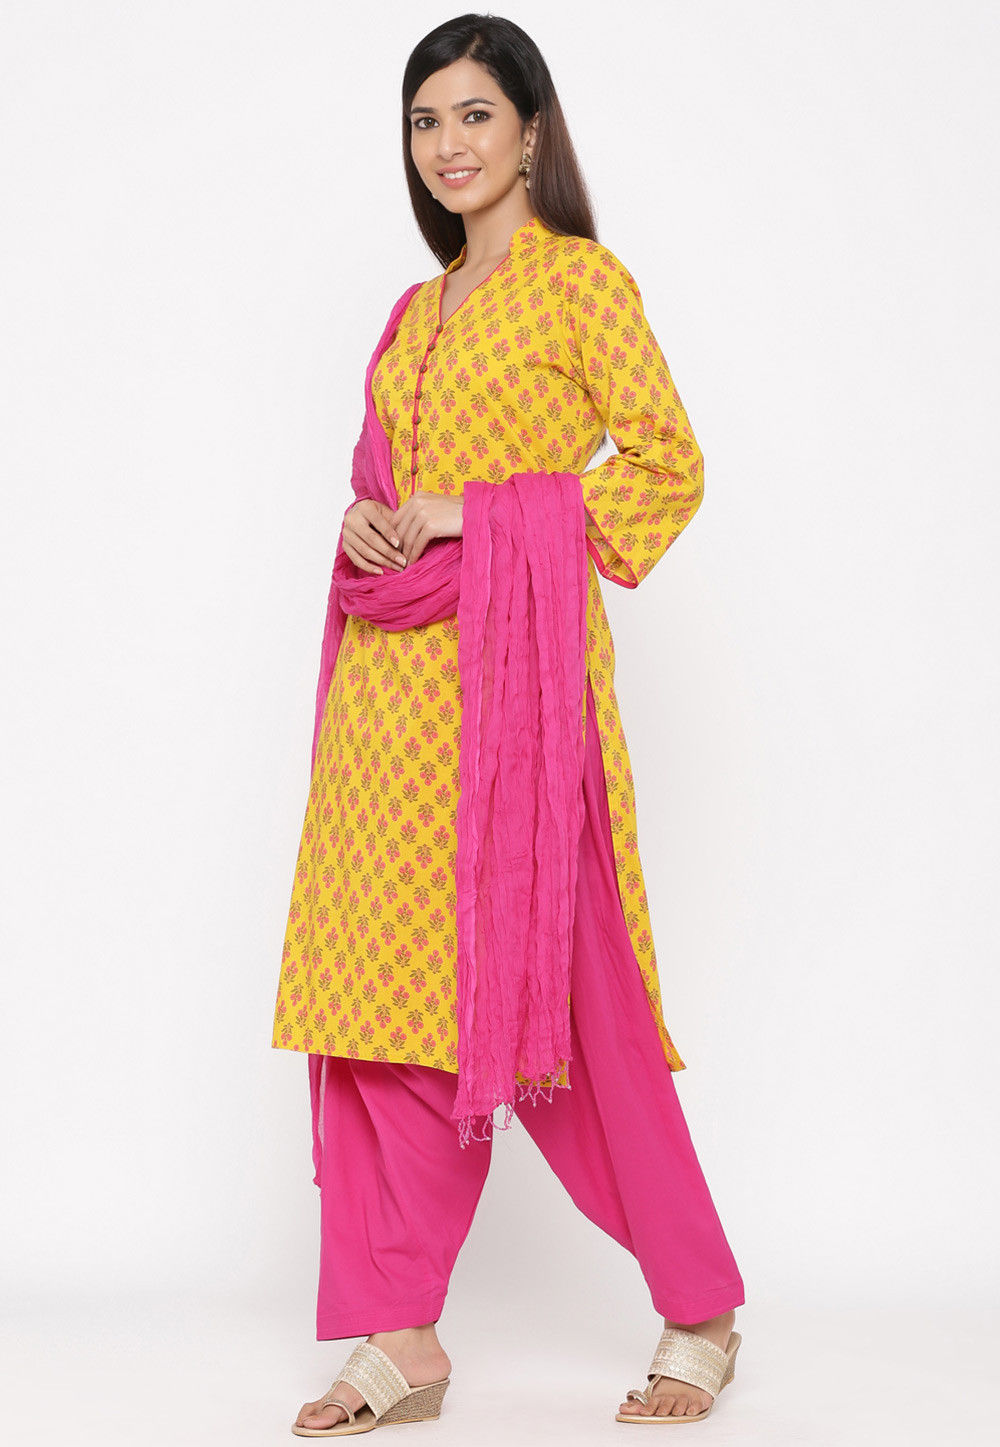 Buy Printed Cotton Punjabi Suit in Yellow Online : KTN512 - Utsav Fashion